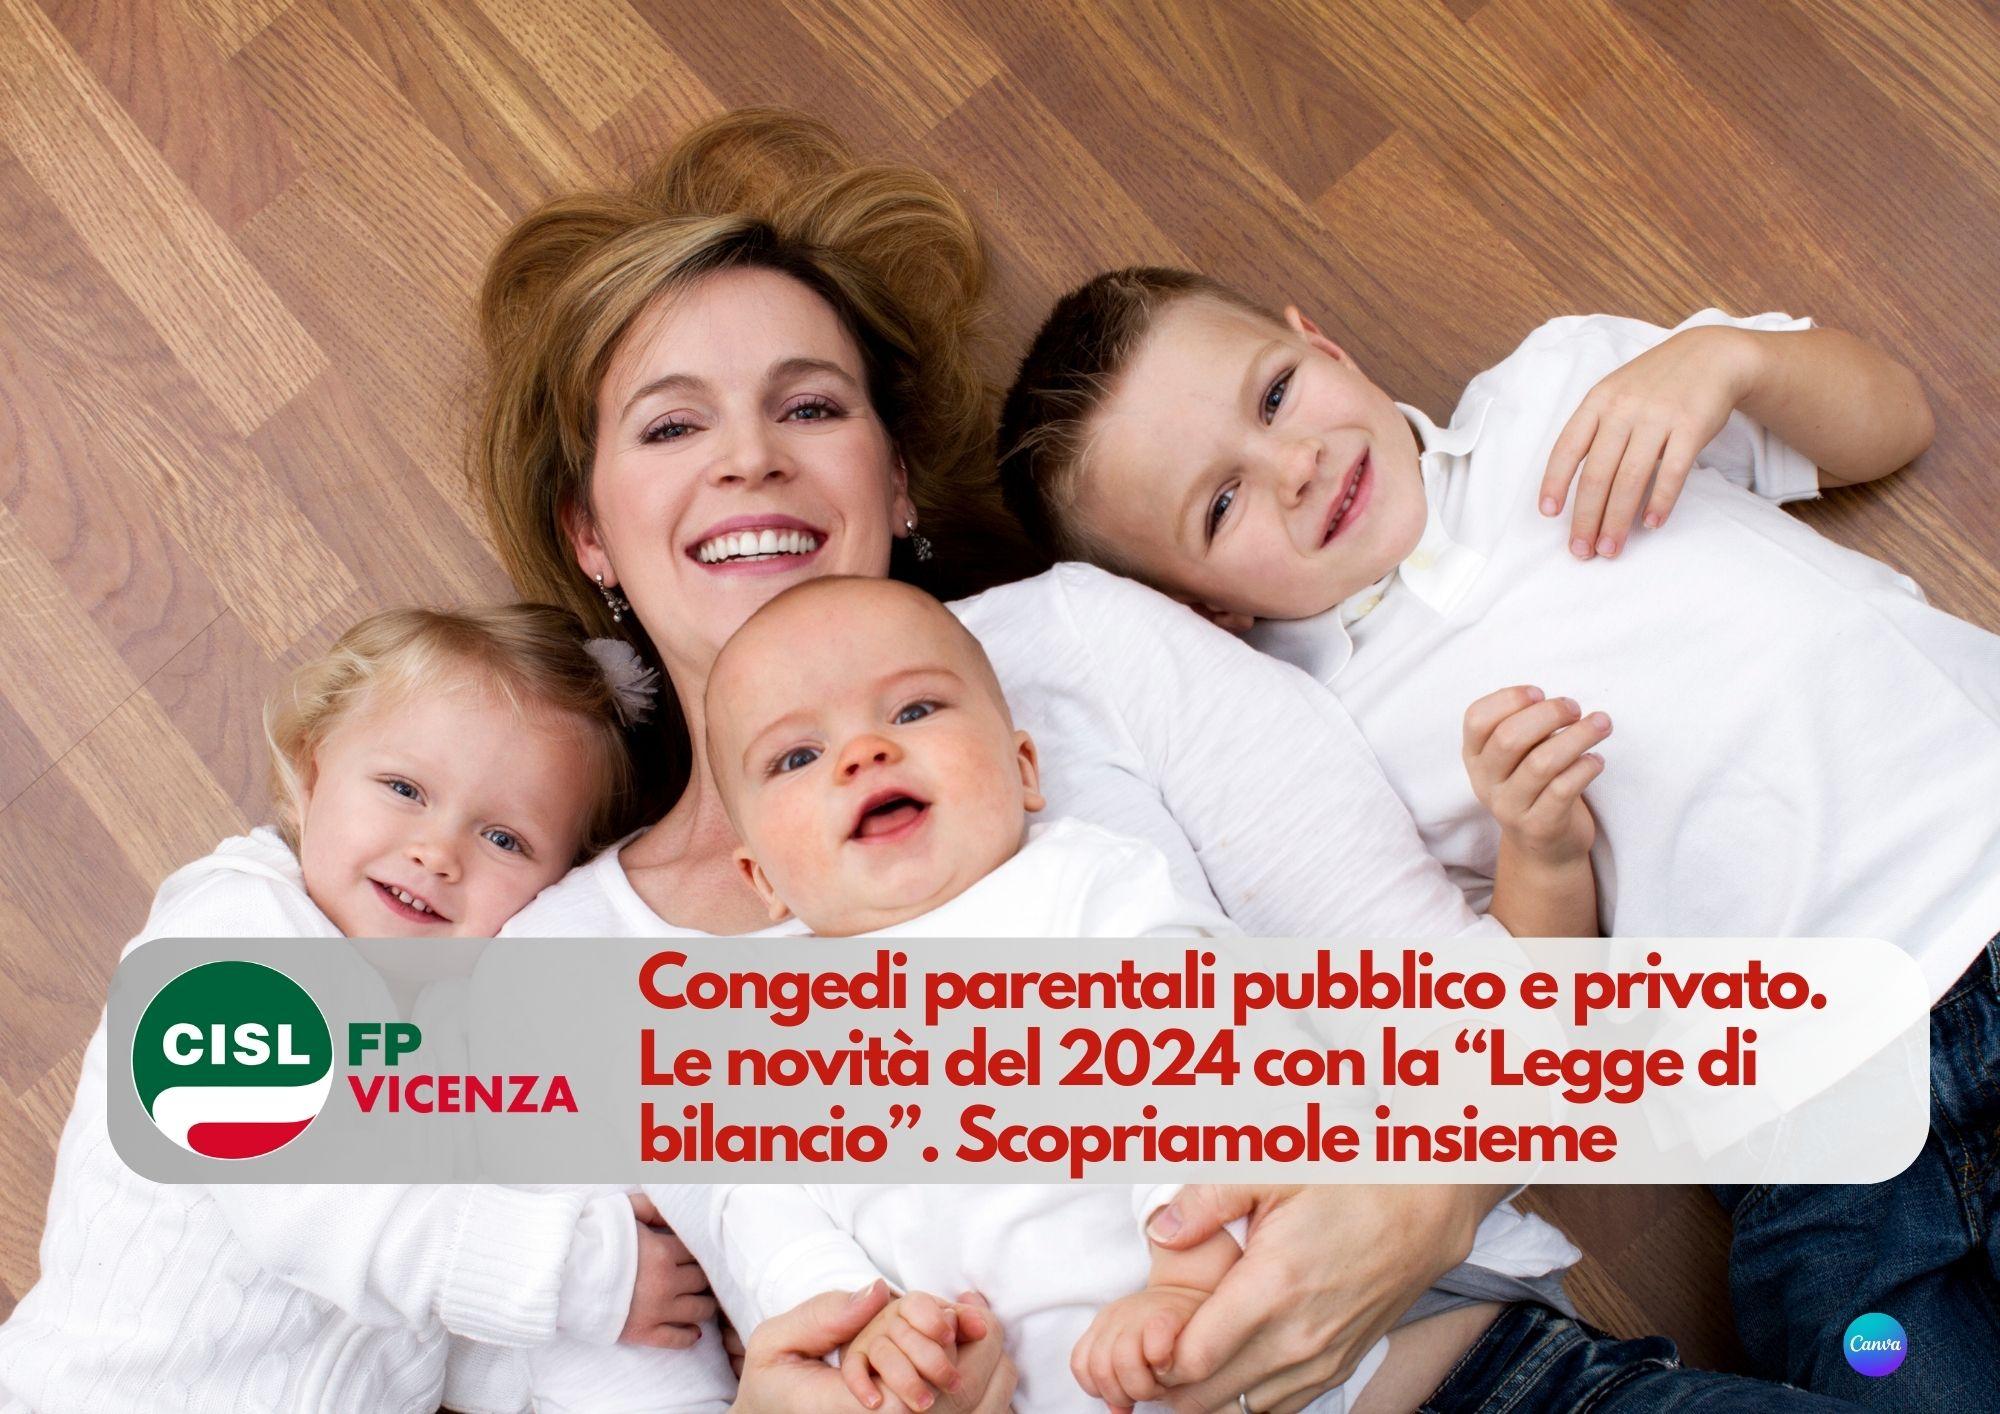 CISL FP Vicenza. Congedi parentali pubblico e privato. Le novità del 2024 con la Legge di bilancio